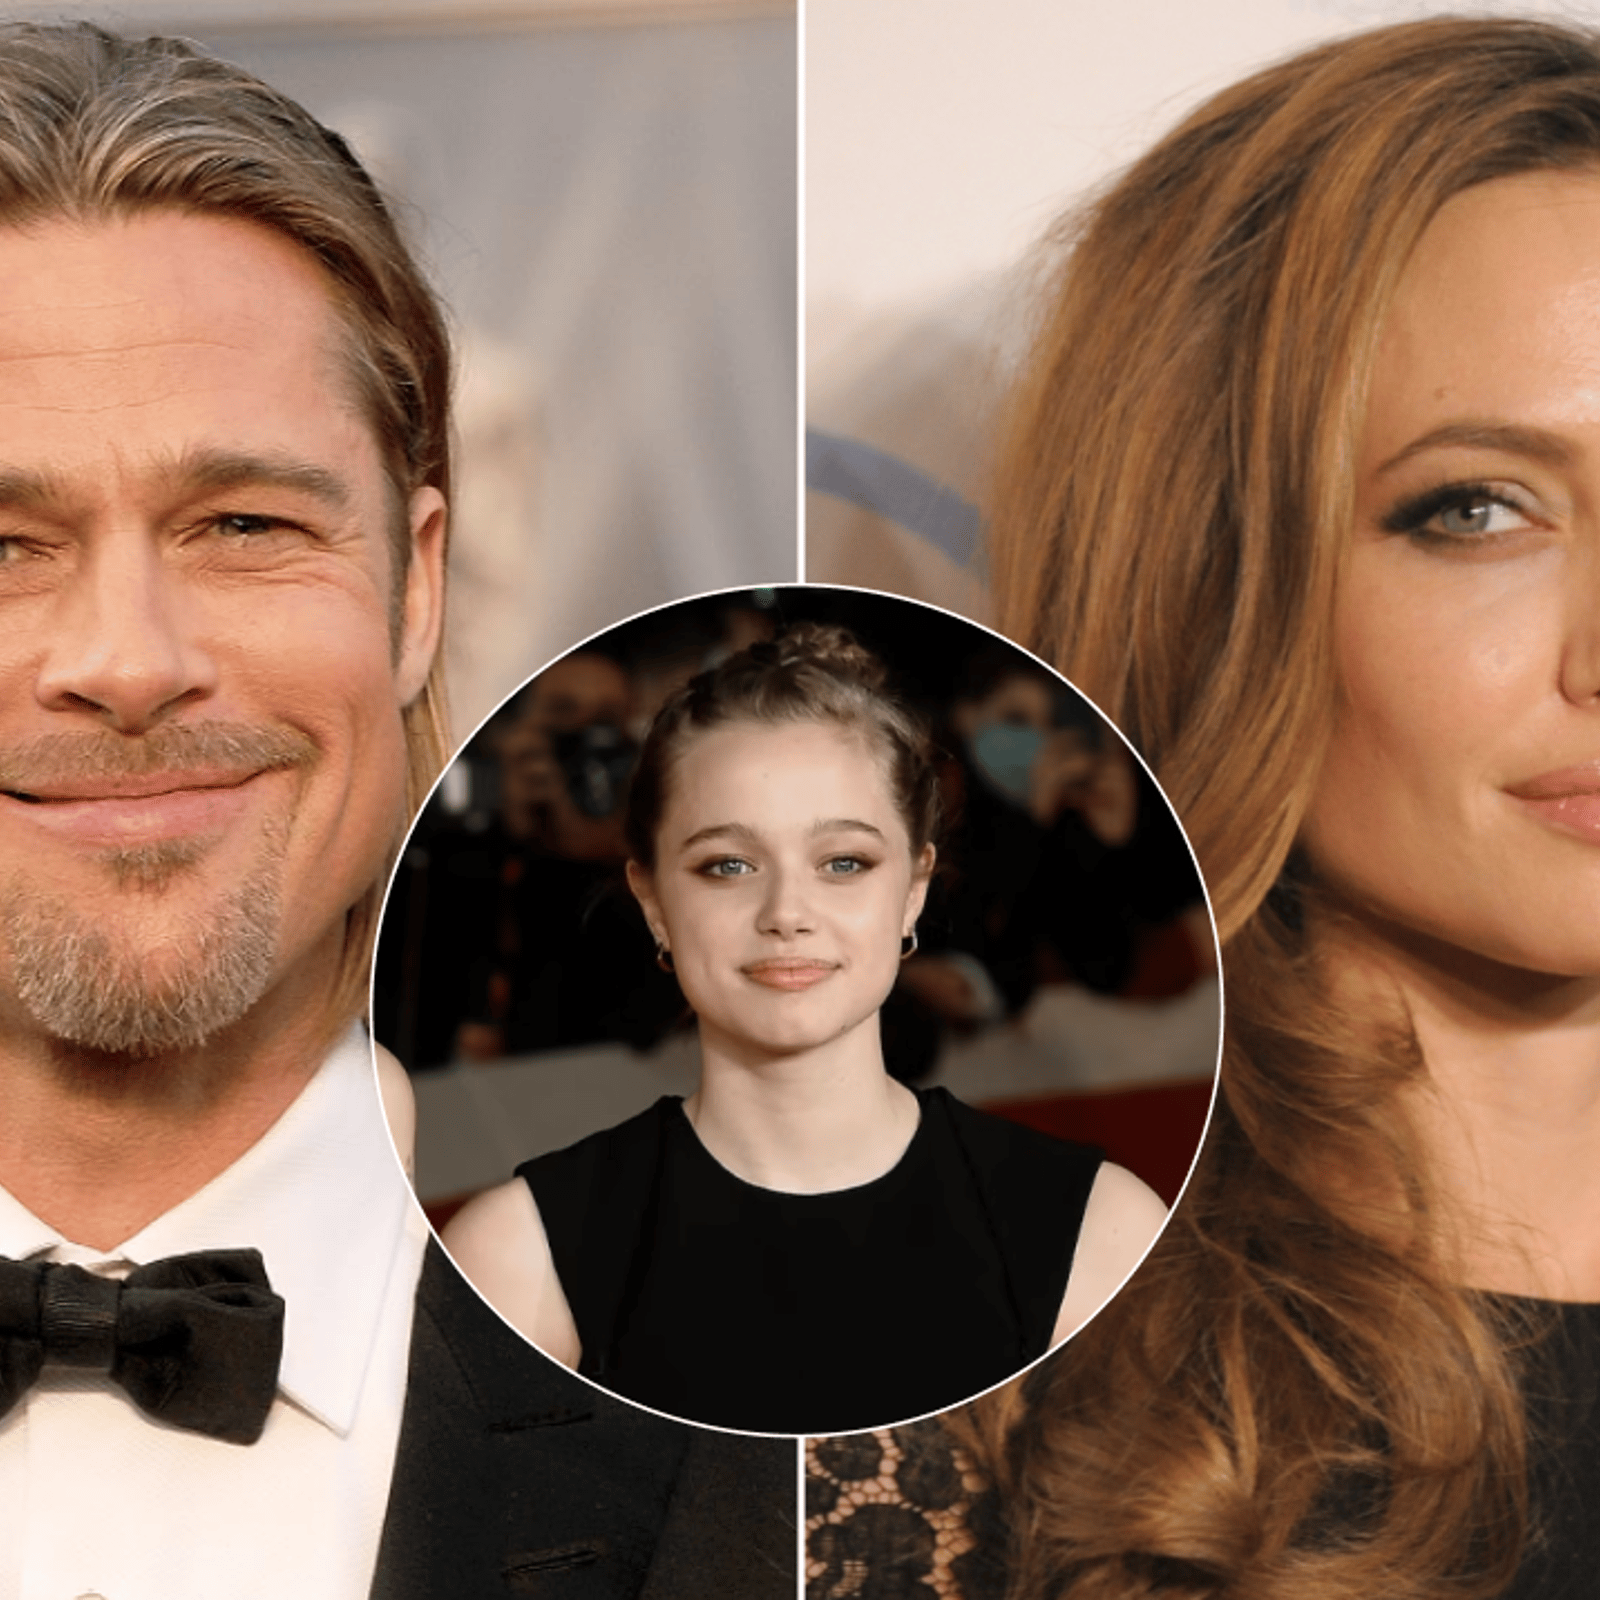 La fille de Brad Pitt fait changer son nom immédiatement après sa fête de 18 ans